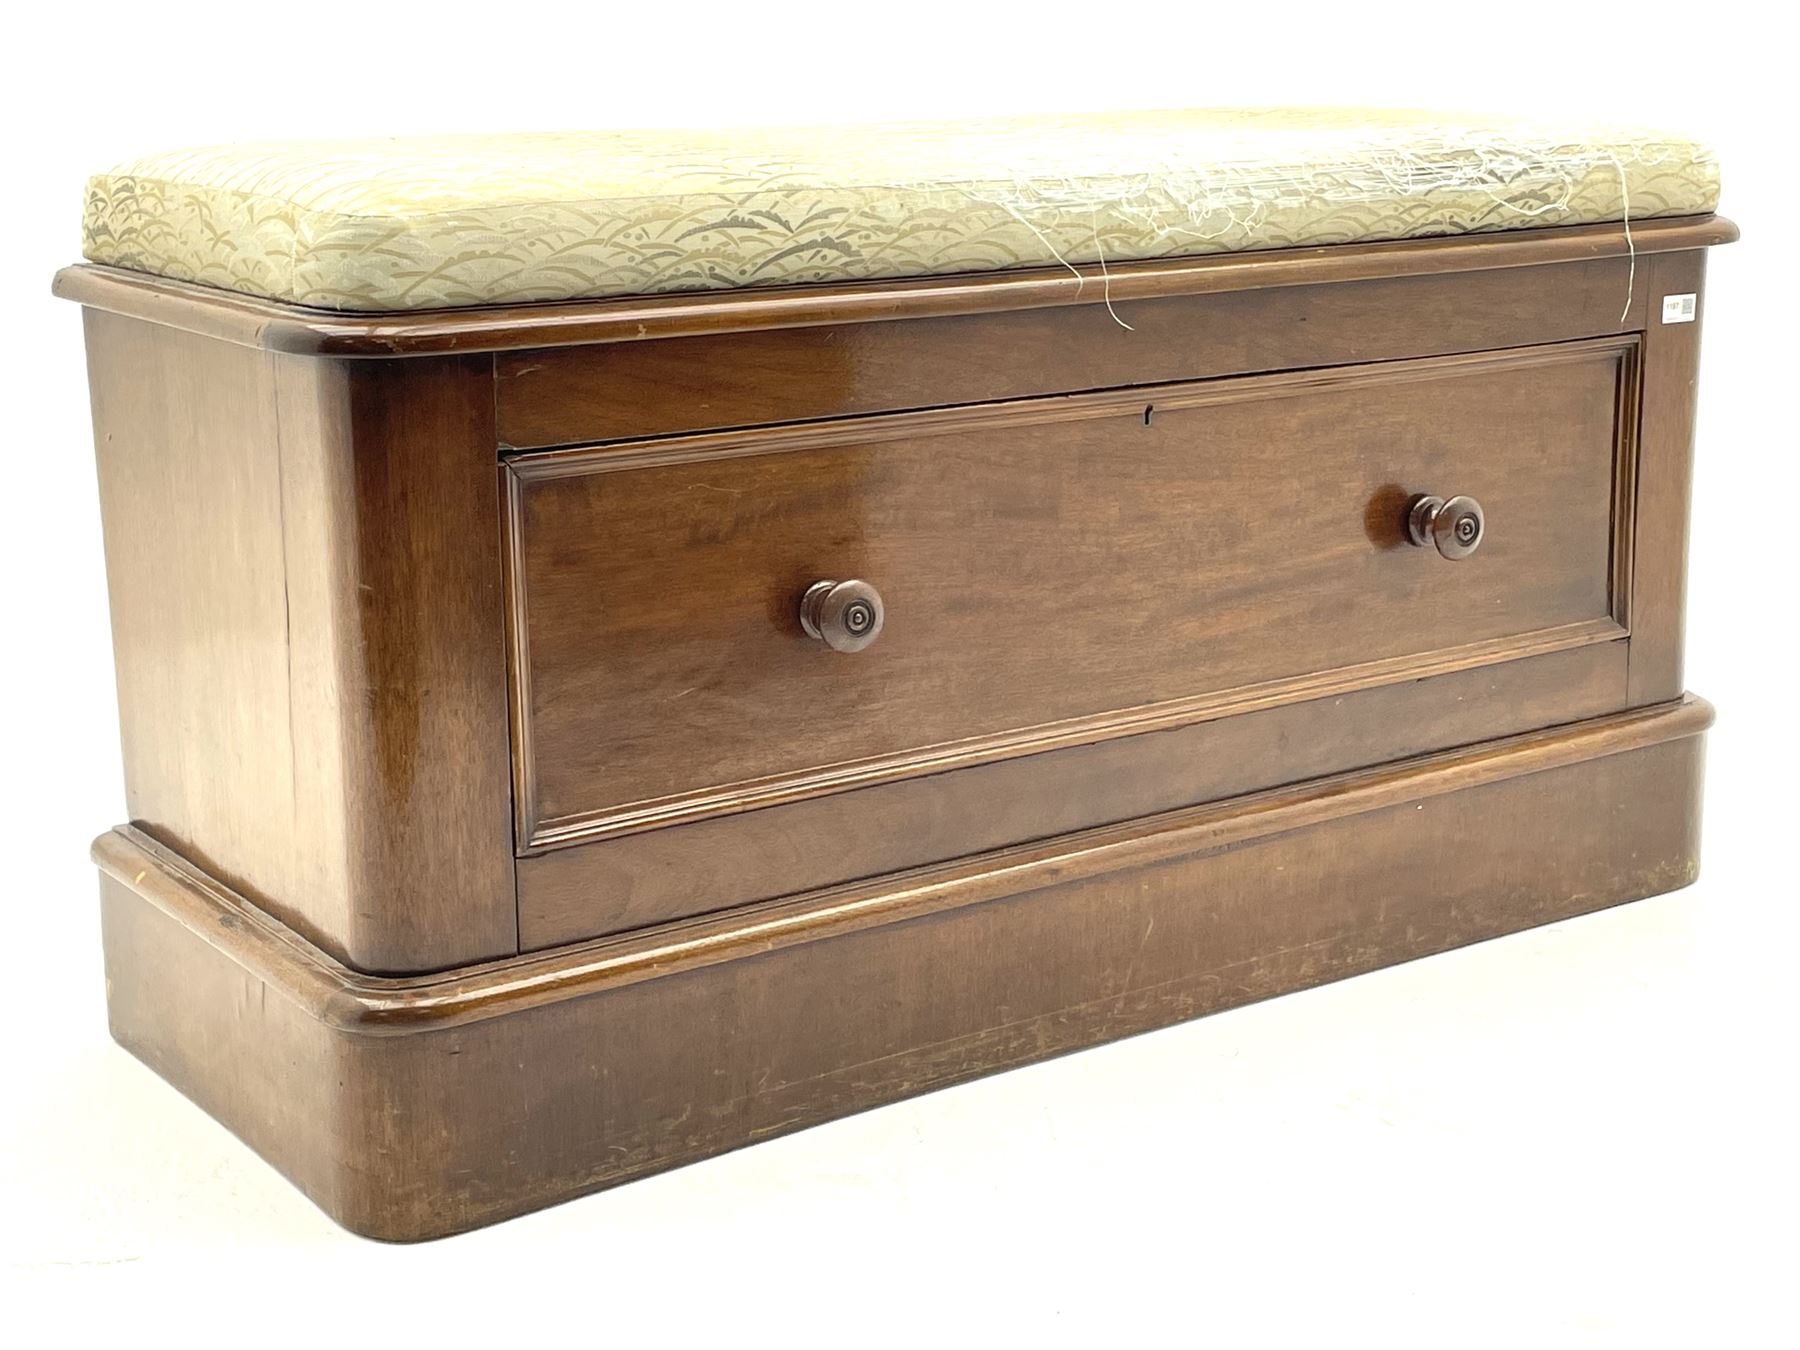 Early 20th century oak barley twist drawer leaf dining table